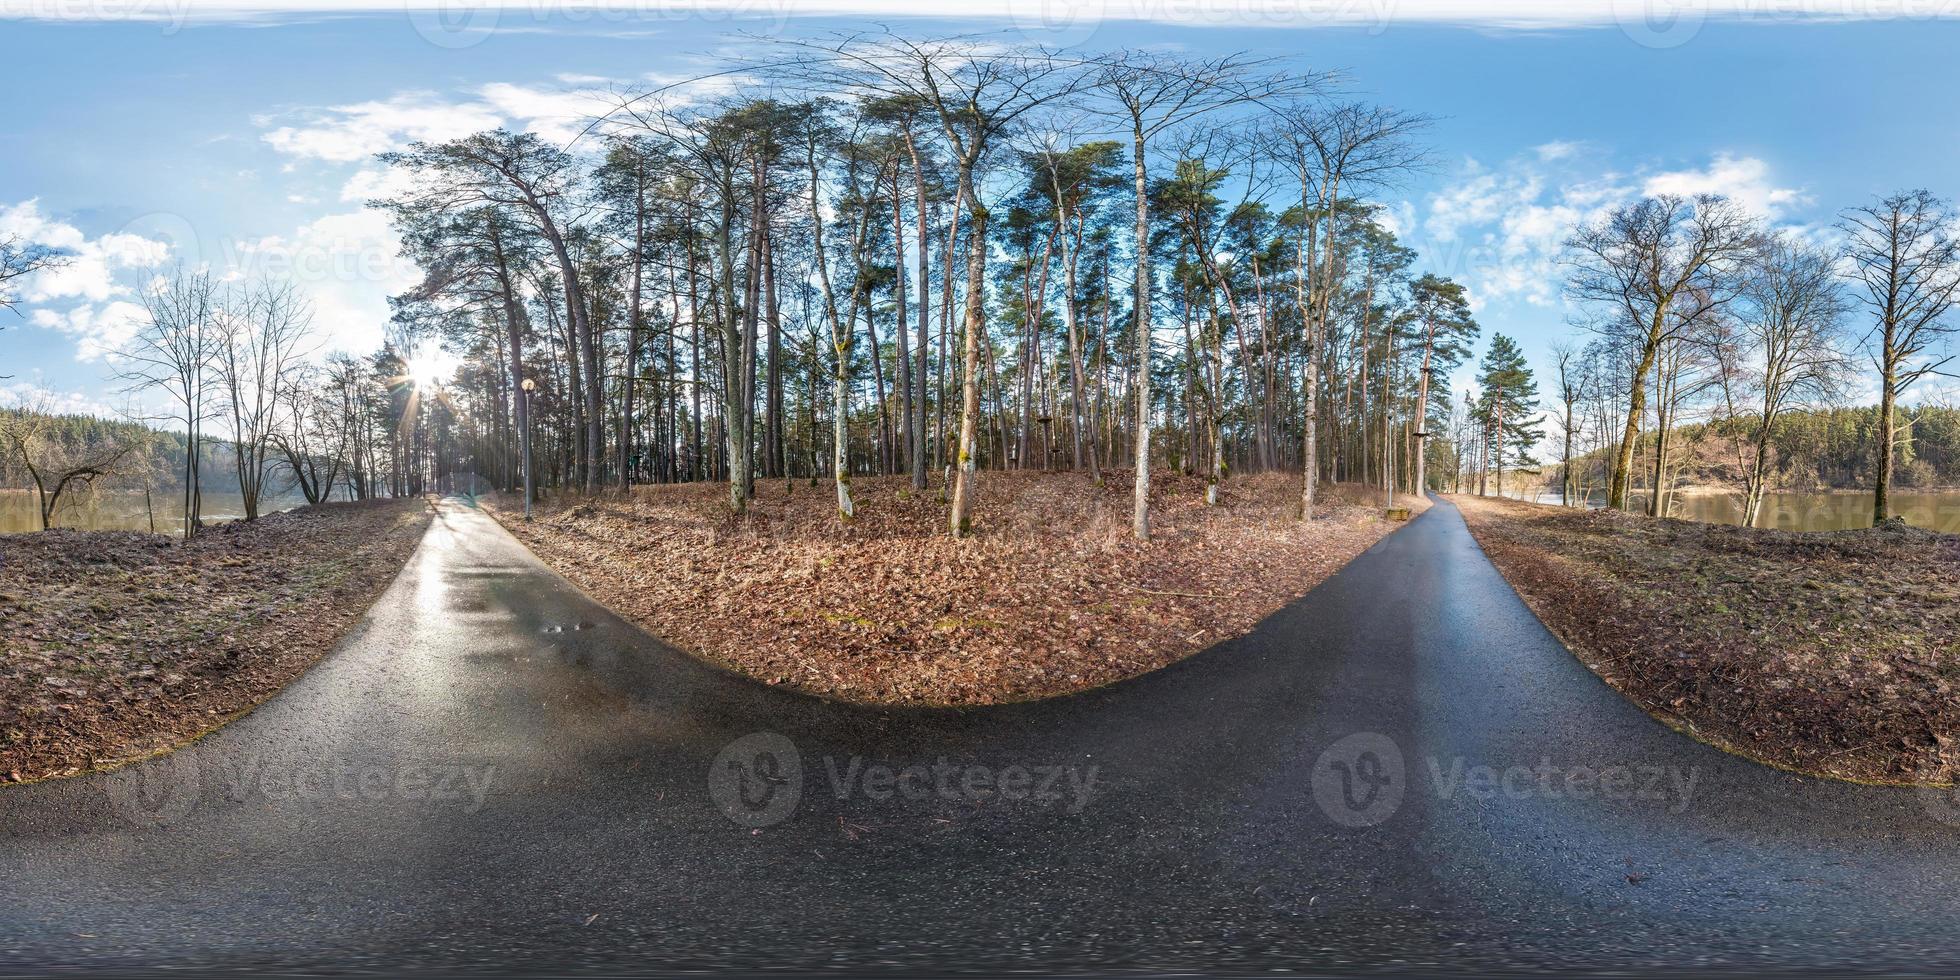 panorama hdri sphérique complet vue d'angle à 360 degrés sur le sentier piétonnier asphalté et la piste cyclable dans la forêt de pins près de la rivière en projection équirectangulaire. contenu vr ar photo